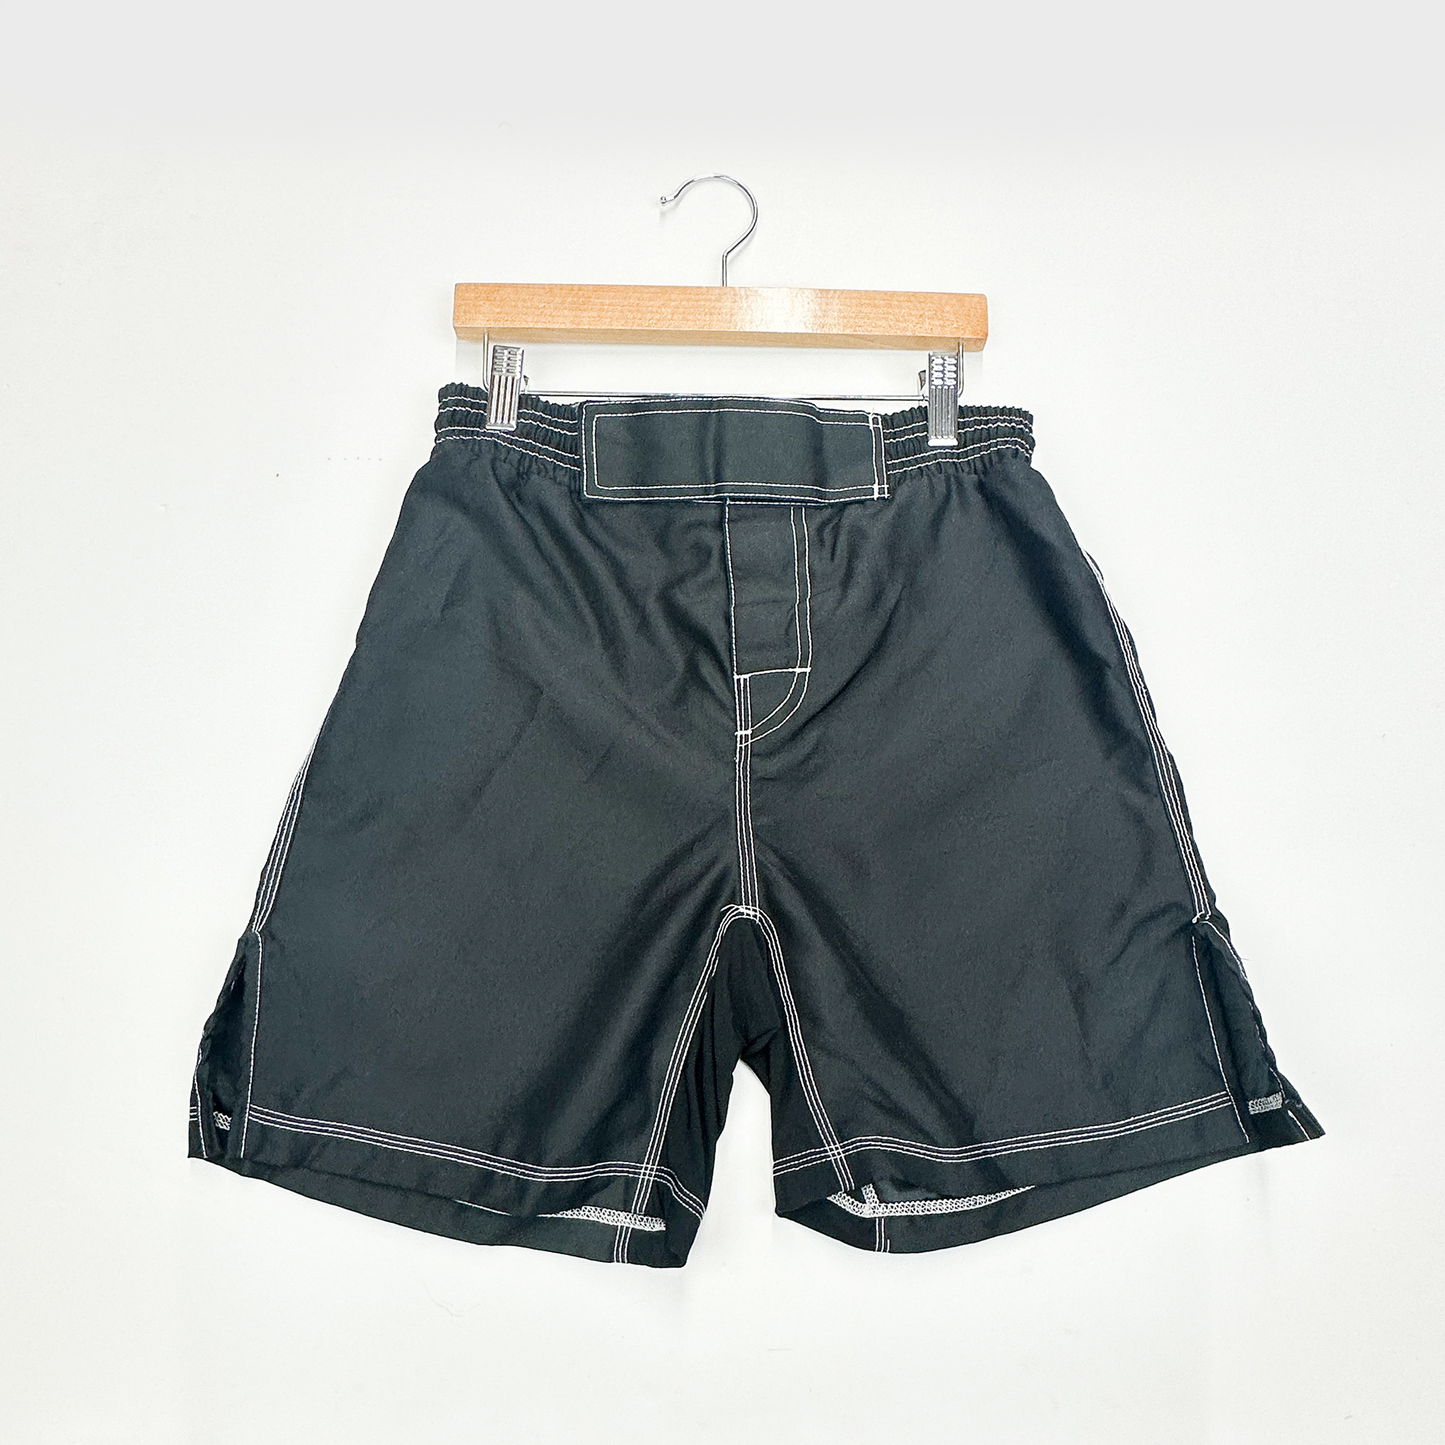 Kids Oversized Black Nylon Shorts - Size 12-14yr